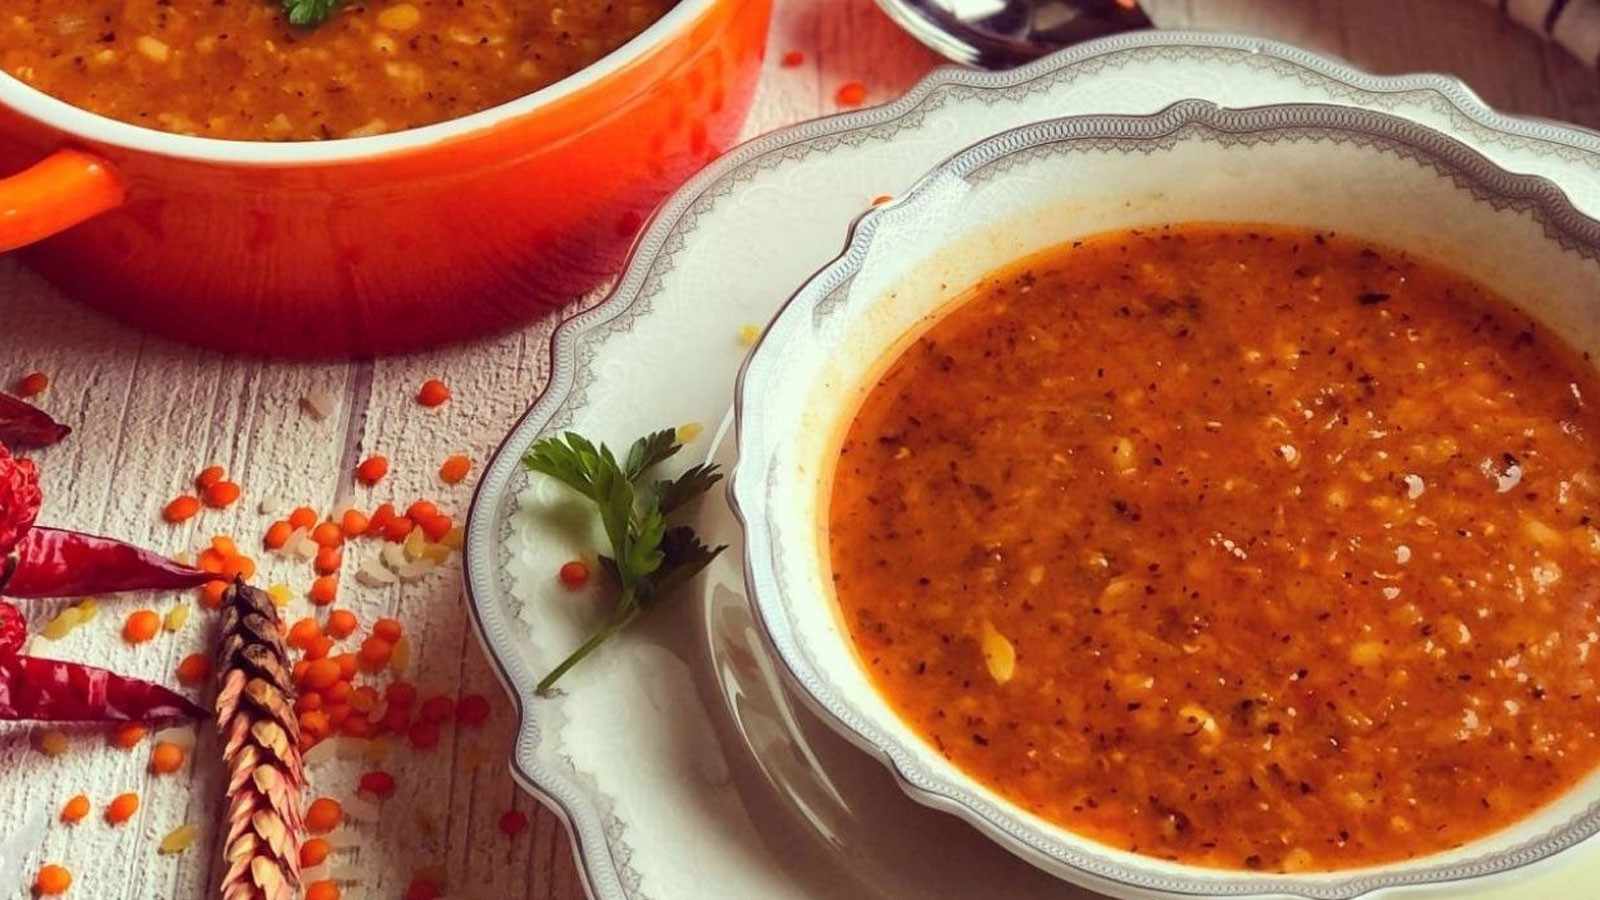 Mahluta çorbası, kırmızı mercimek ve pirinç katılarak yapılan Antakya mutfağına ait bir lezzettir.